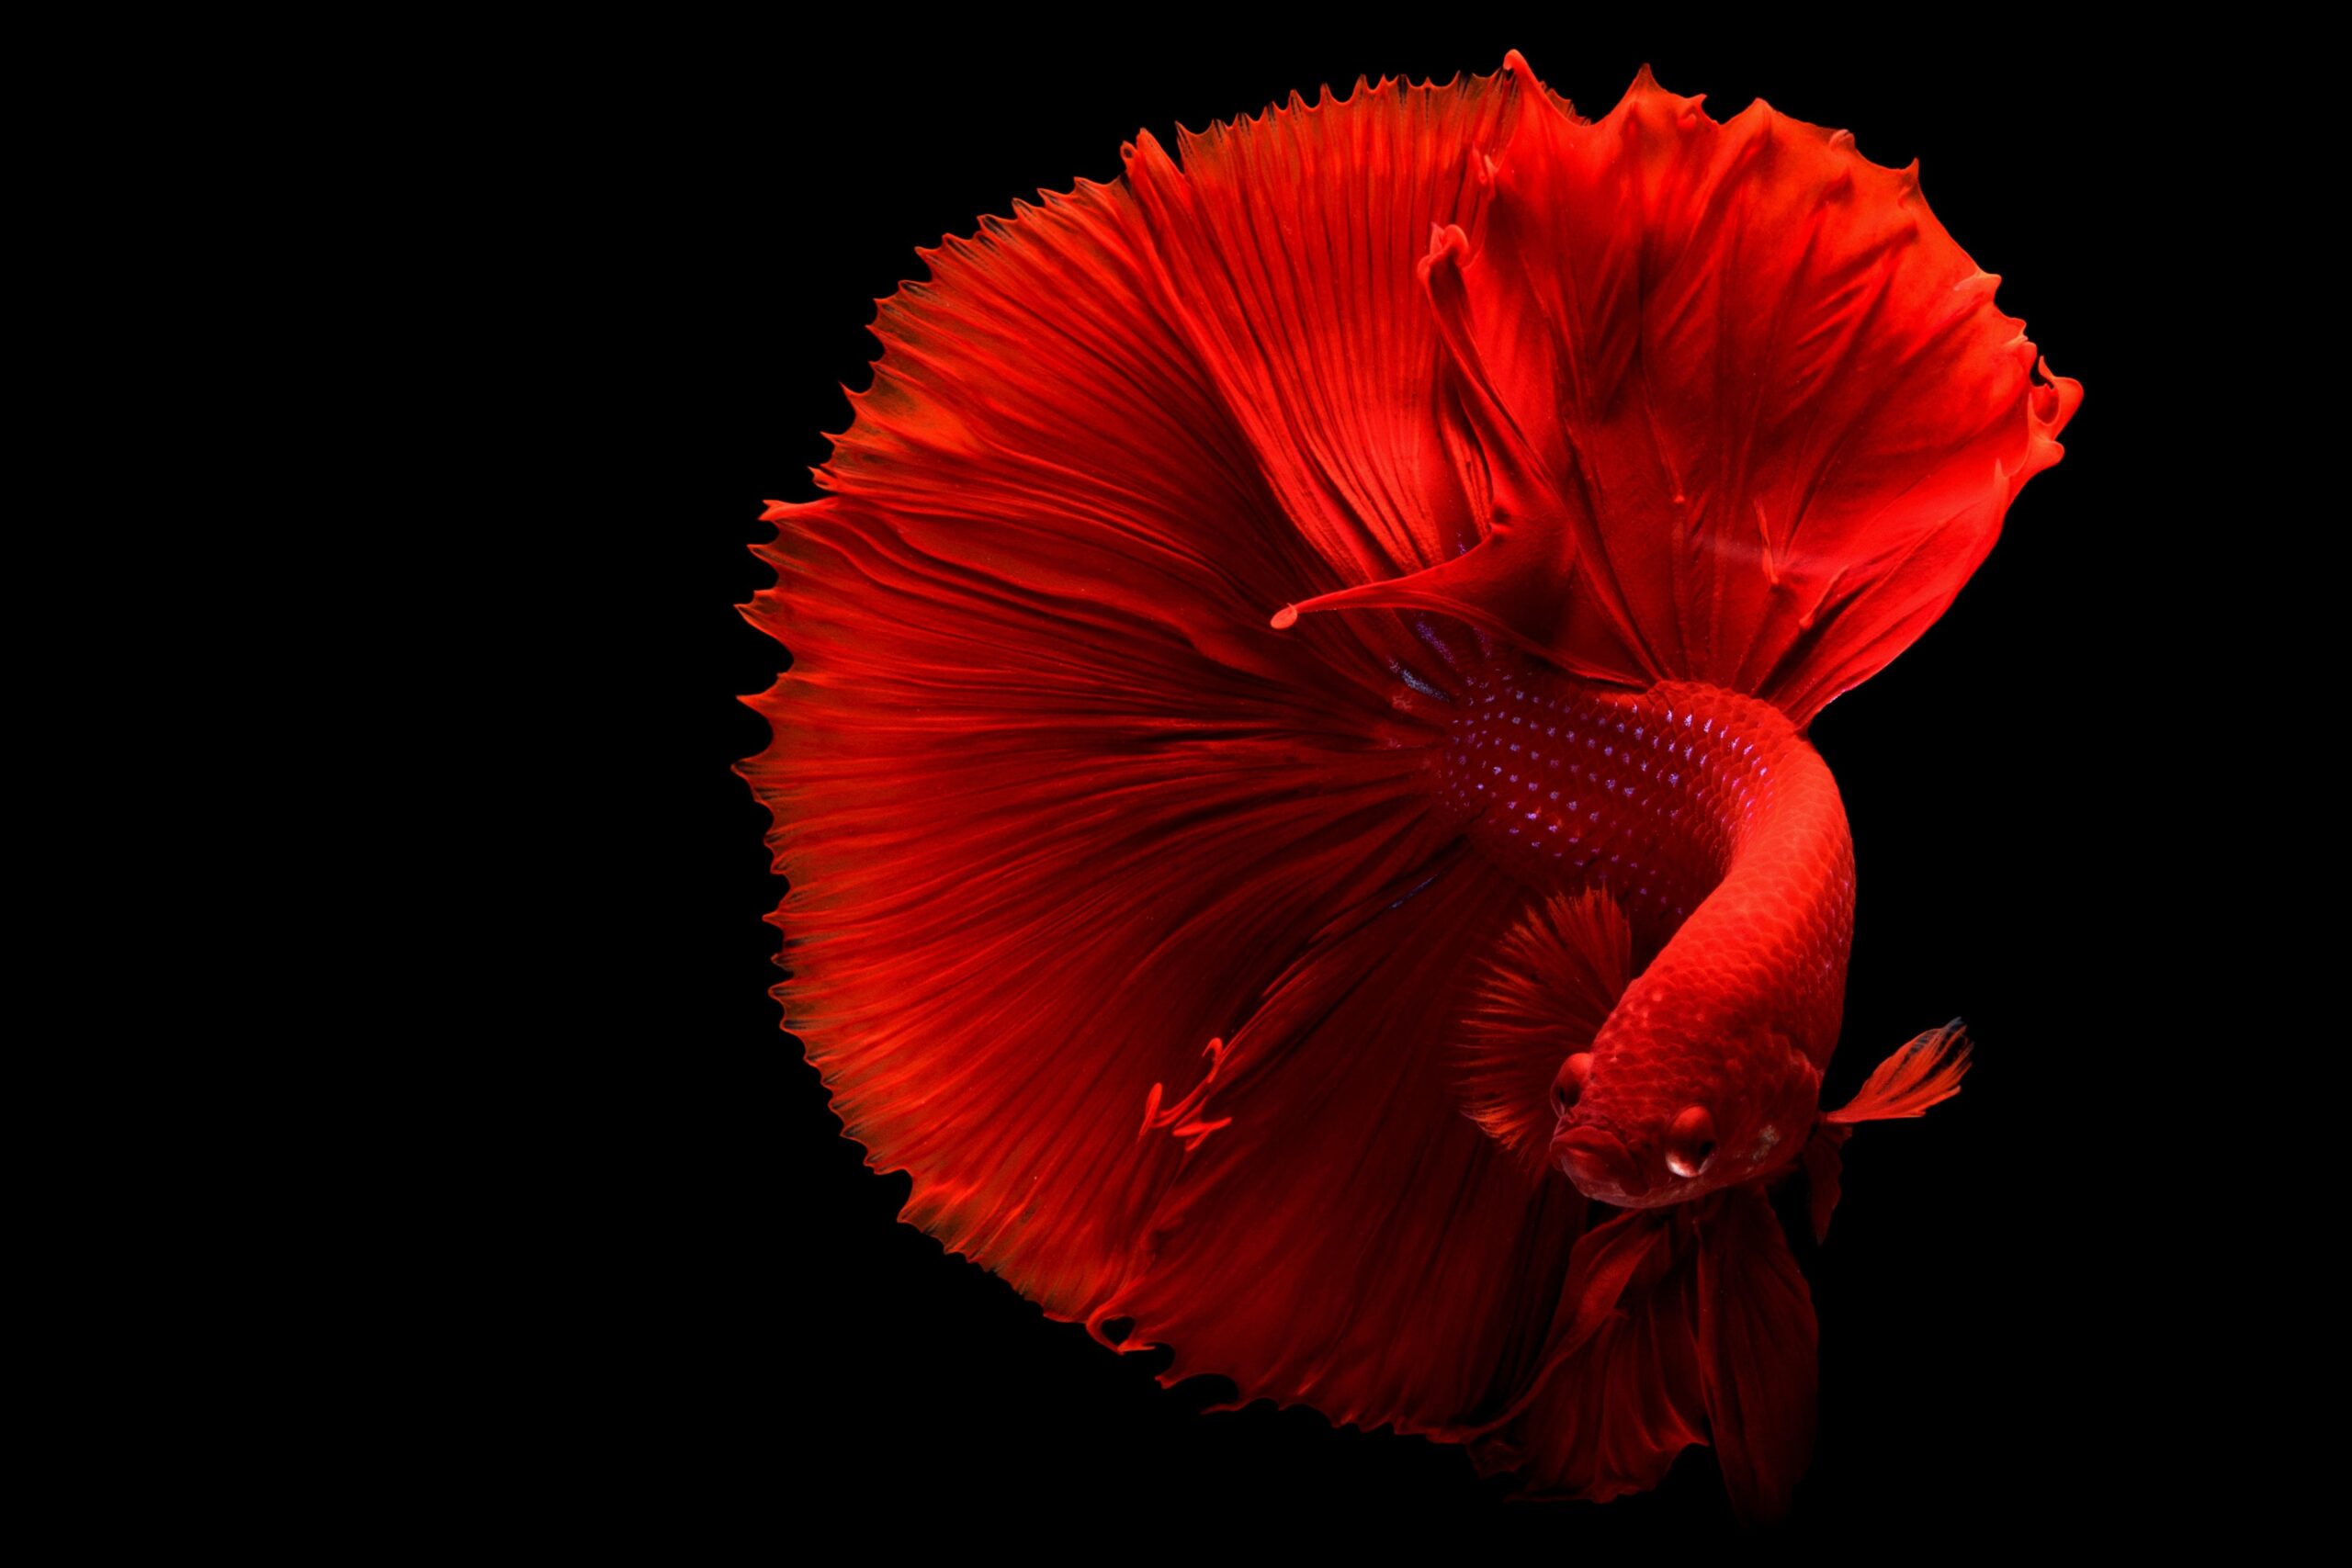 peixe-betta-beleza-e-personalidade-em-um-pequeno-aquario